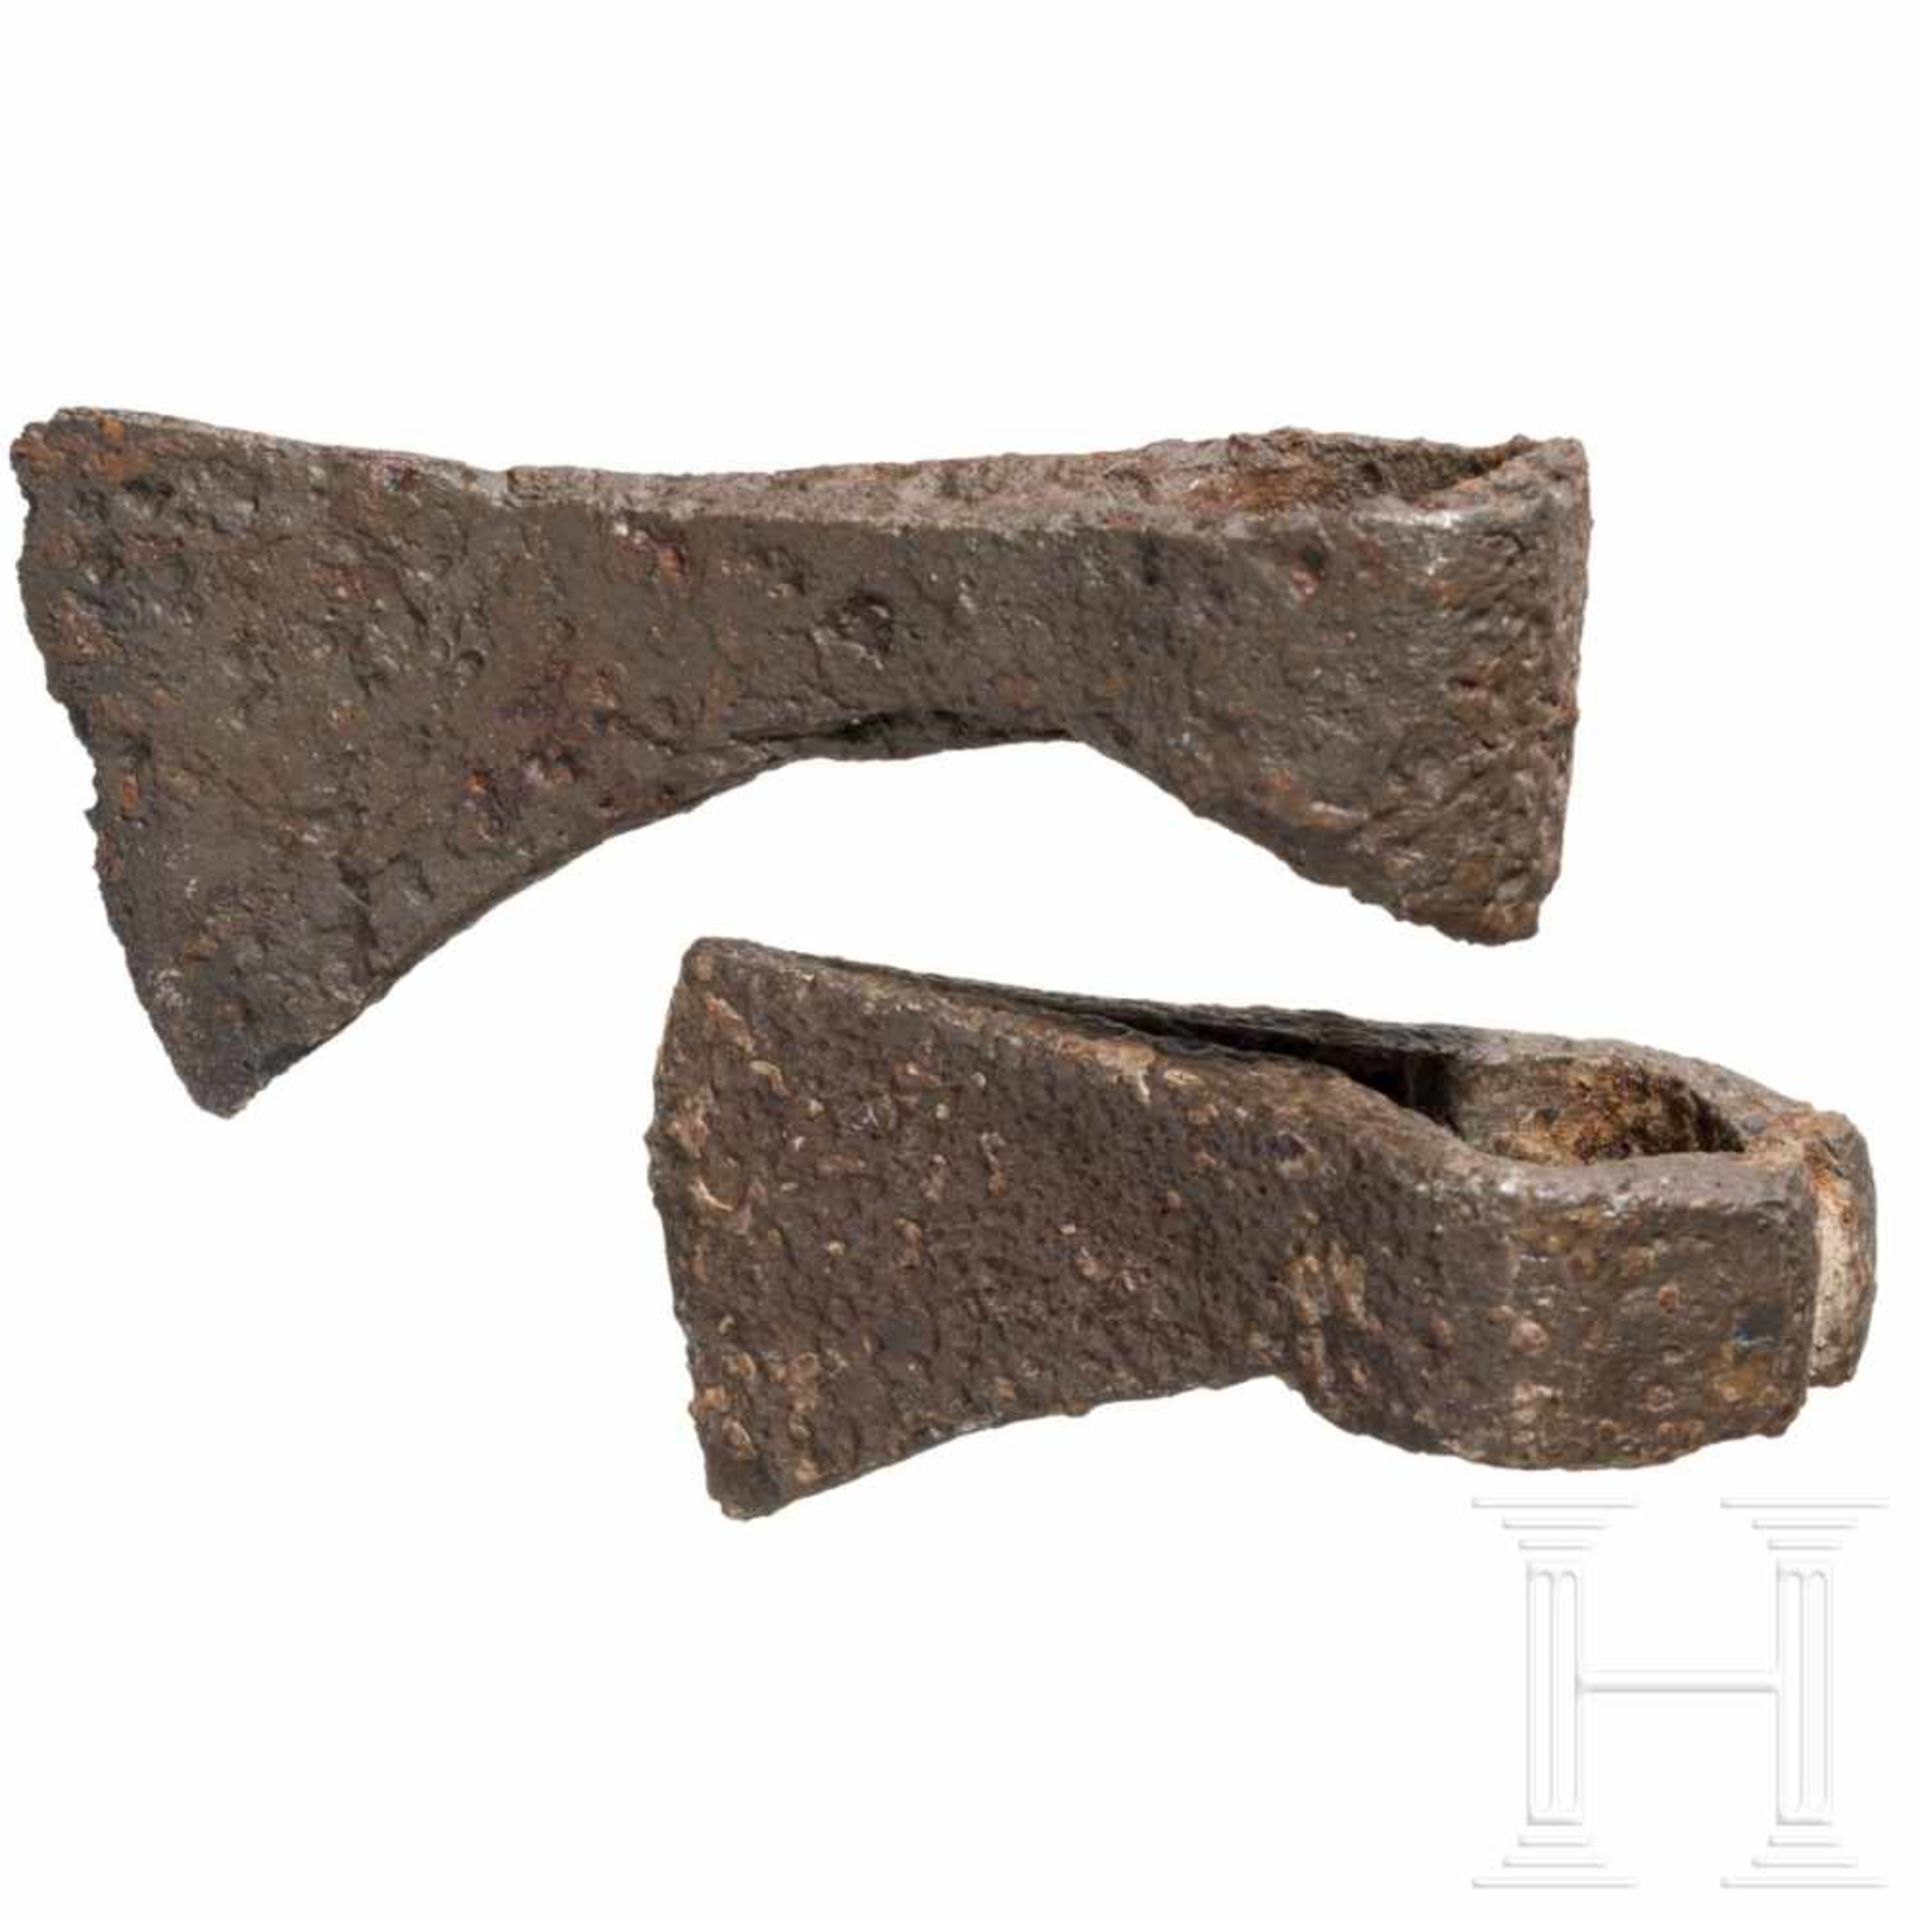 Zwei keltische Äxte, Mitteleuropa, 3. – 1. Jhdt. v. Chr. - Bild 2 aus 2